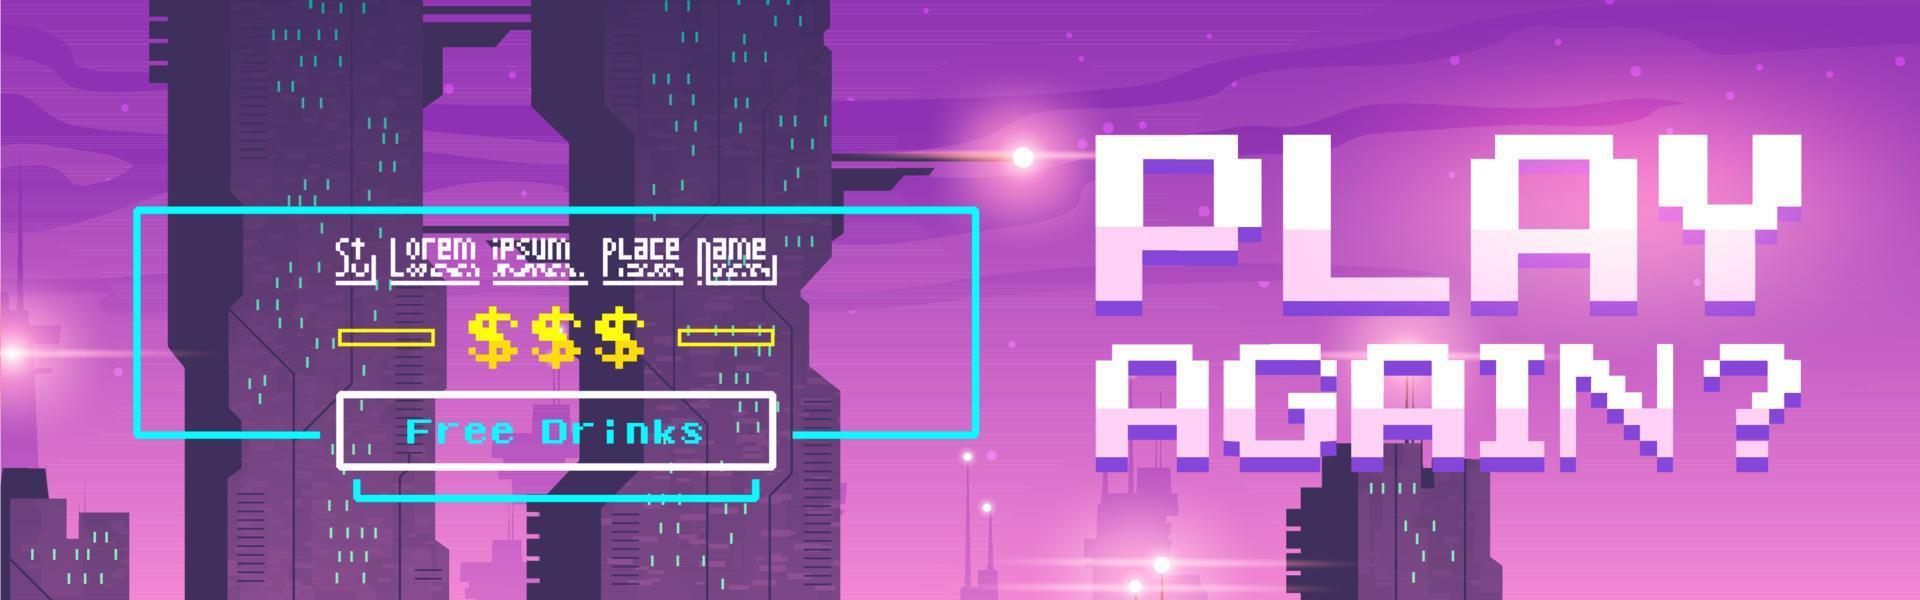 Spielen Sie noch einmal Pixel-Art-Cartoon-Web-Banner für das Spiel vektor